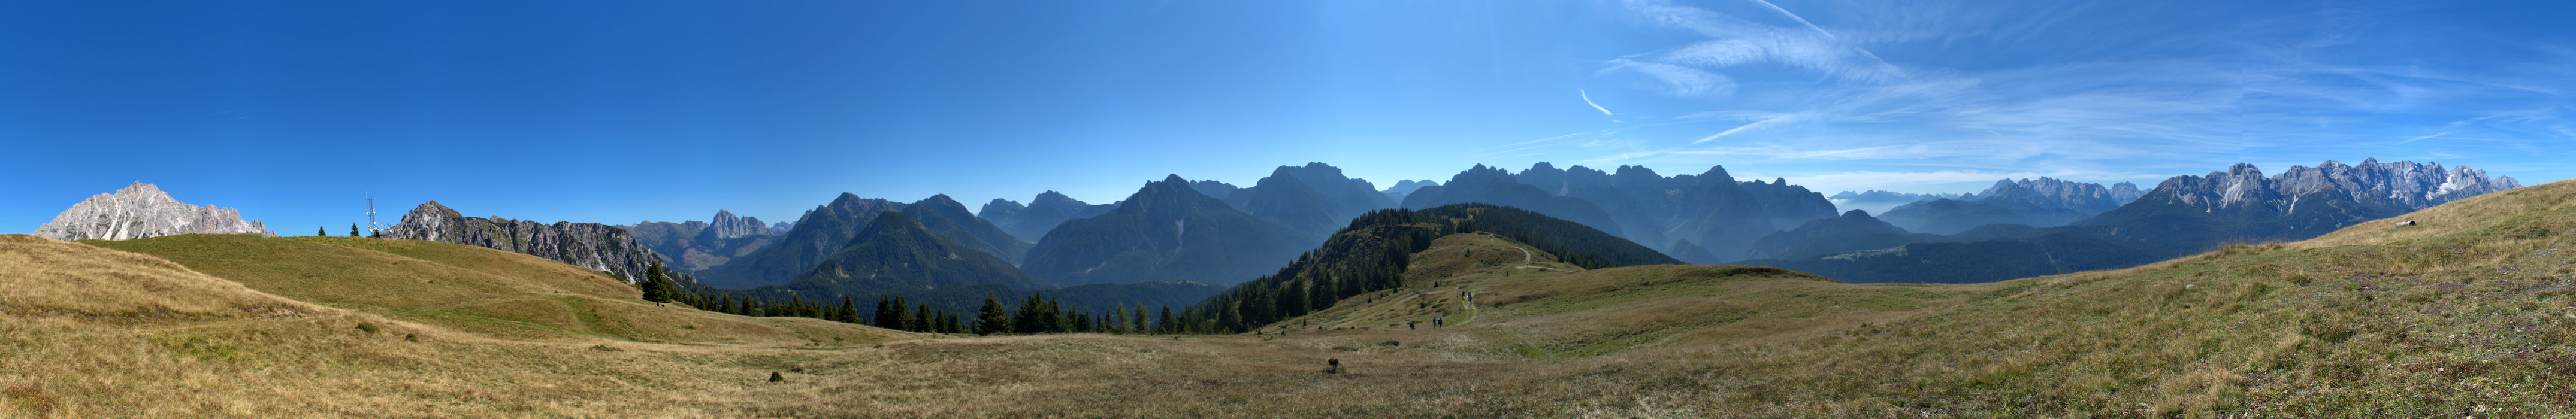 Monte Zovo a Costa di San Nicolò di Comelico, Belluno Dolomiti